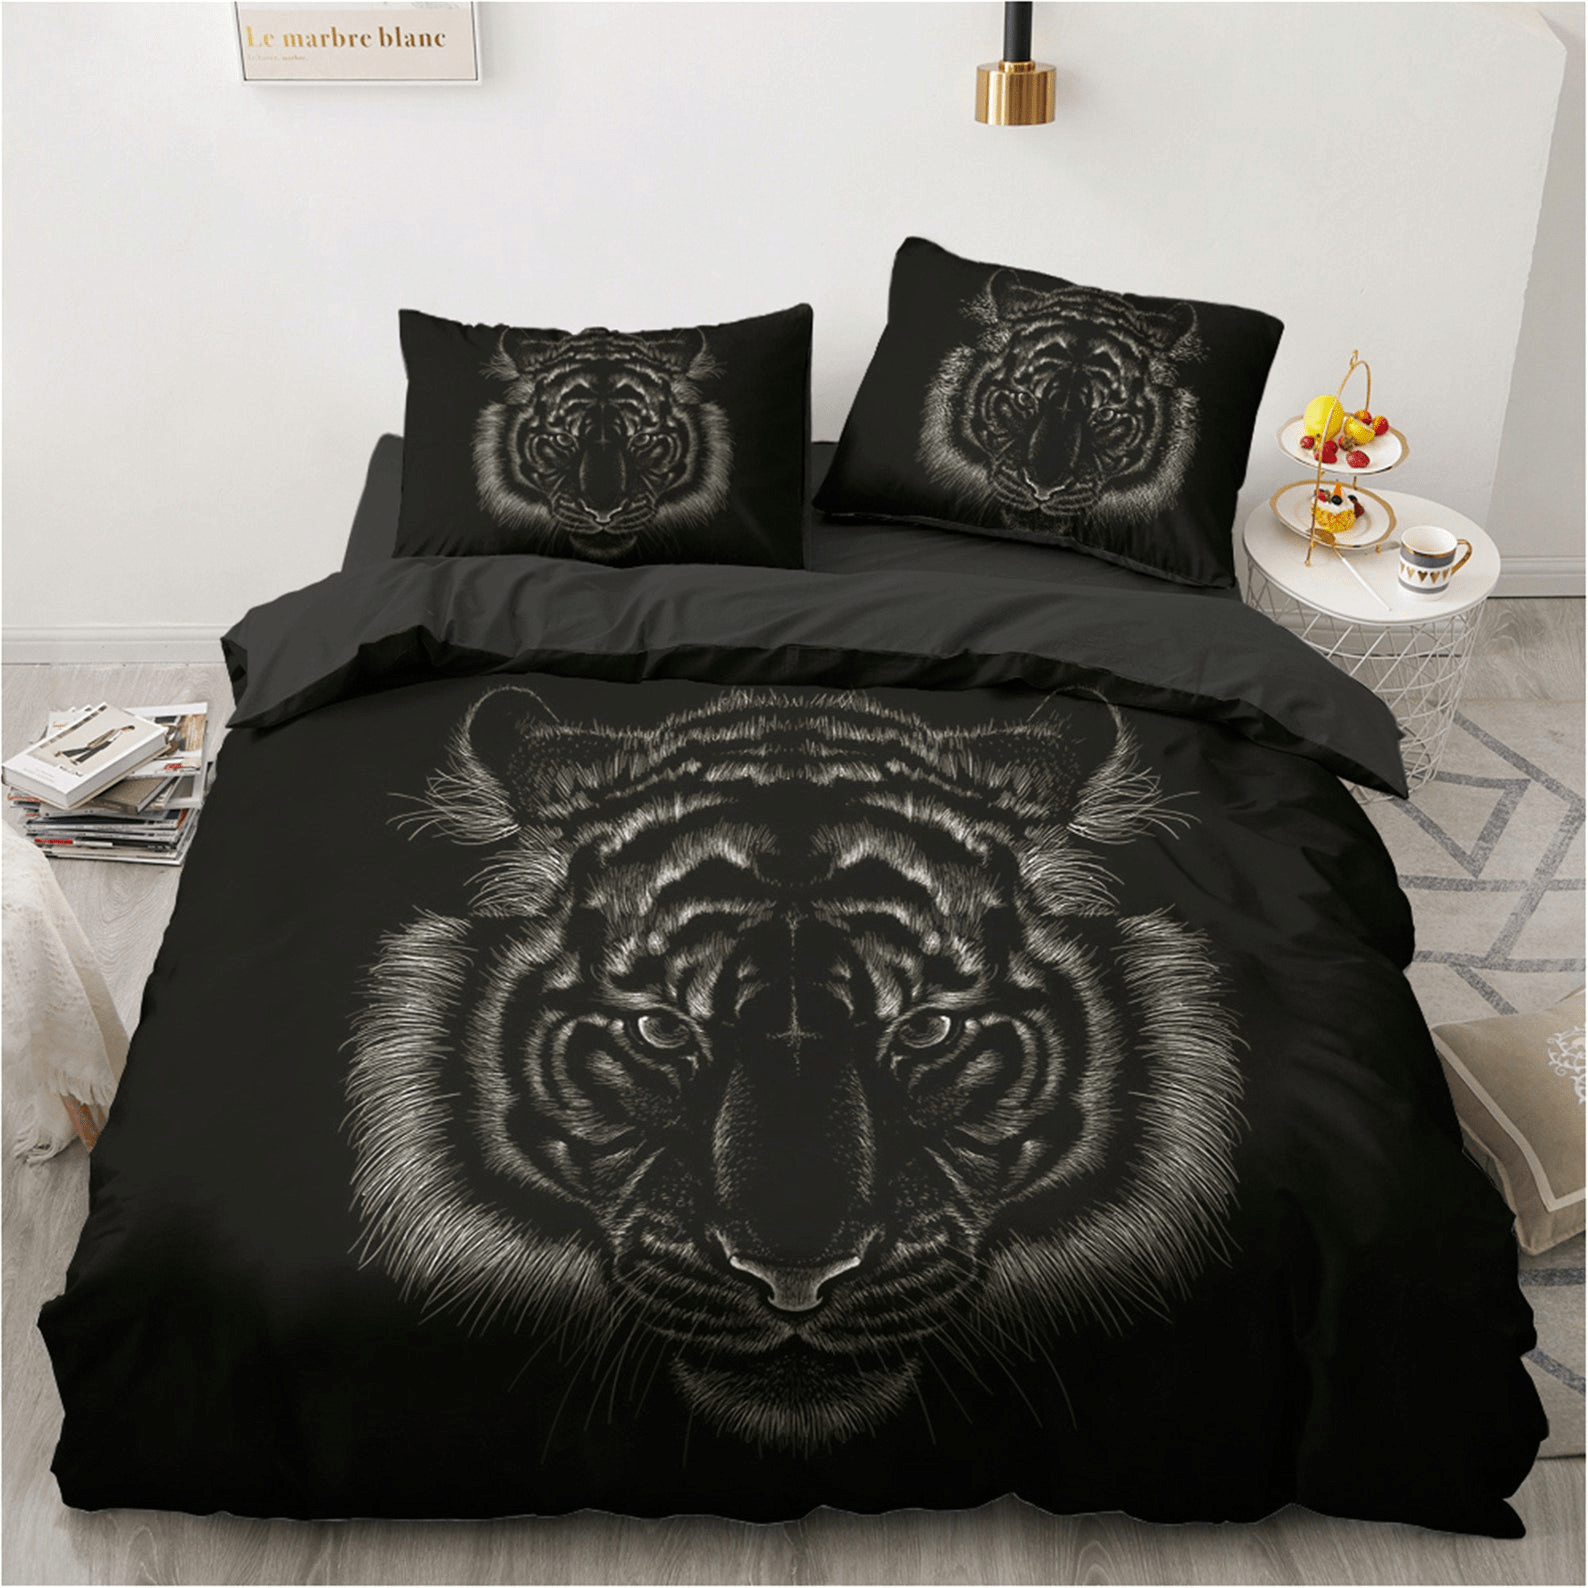 Tiger Black Background Bedding Duvet Cover Bedding Set